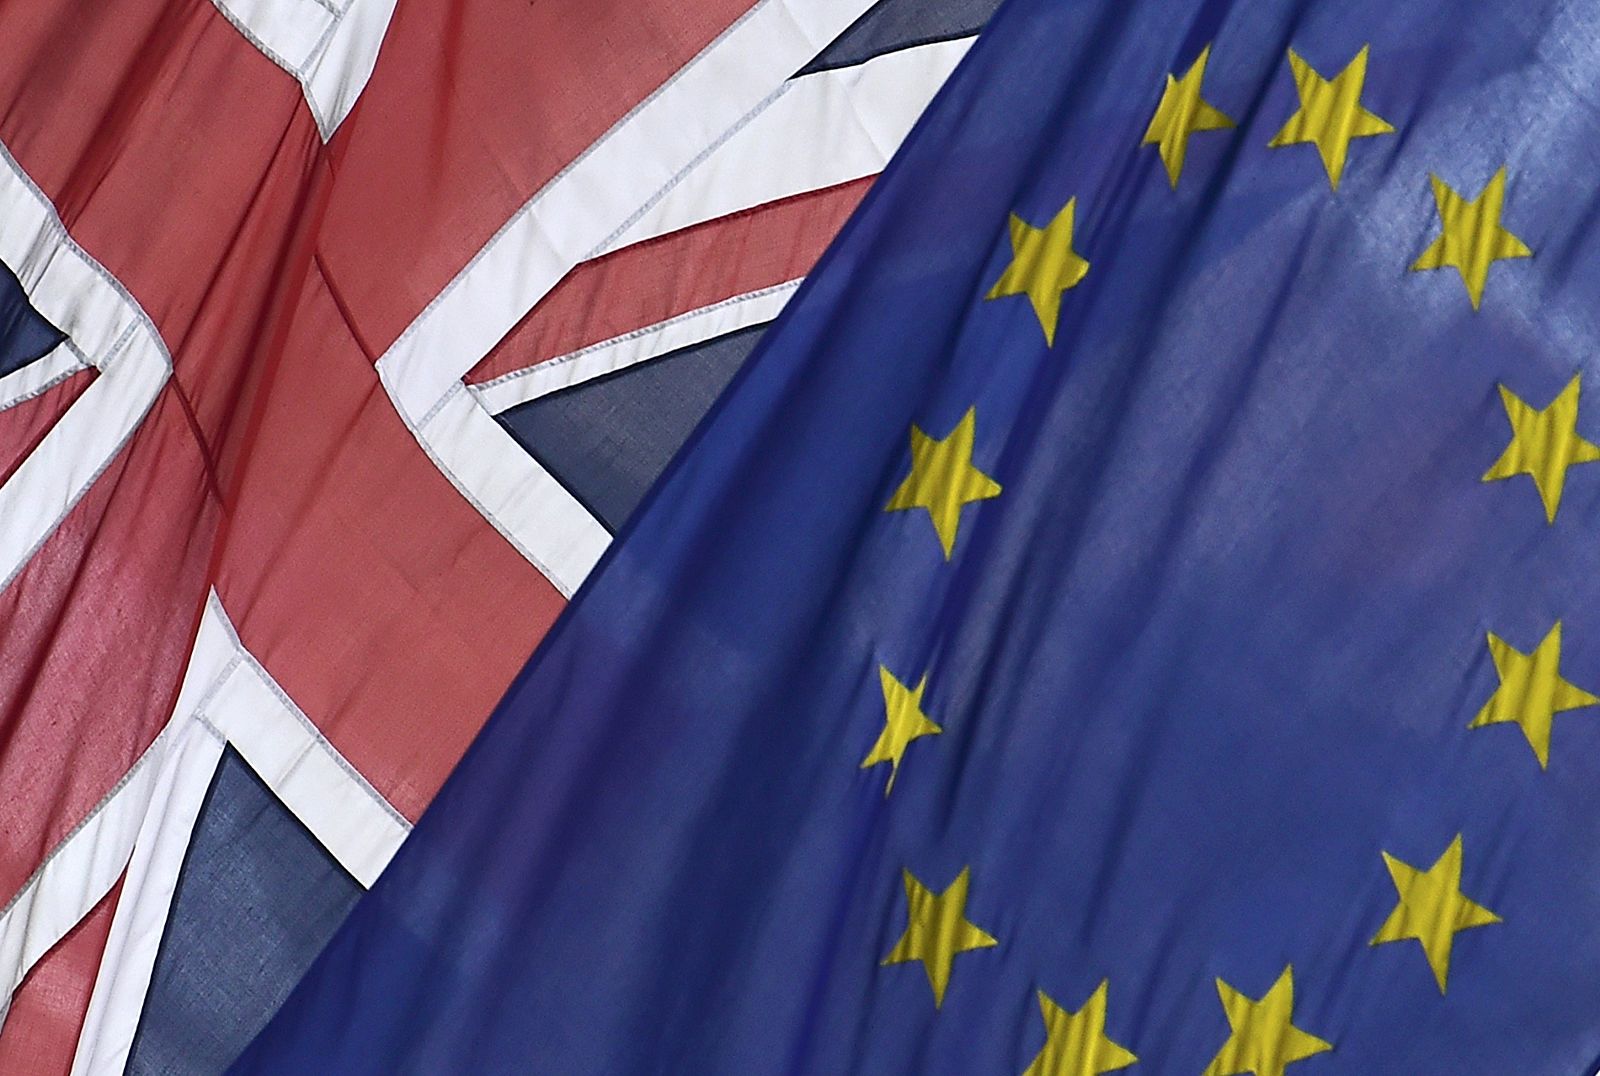 Una bandera de Reino Unido y otra de la Unión Europea ondean juntas en un edificio oficial de Lodnres.